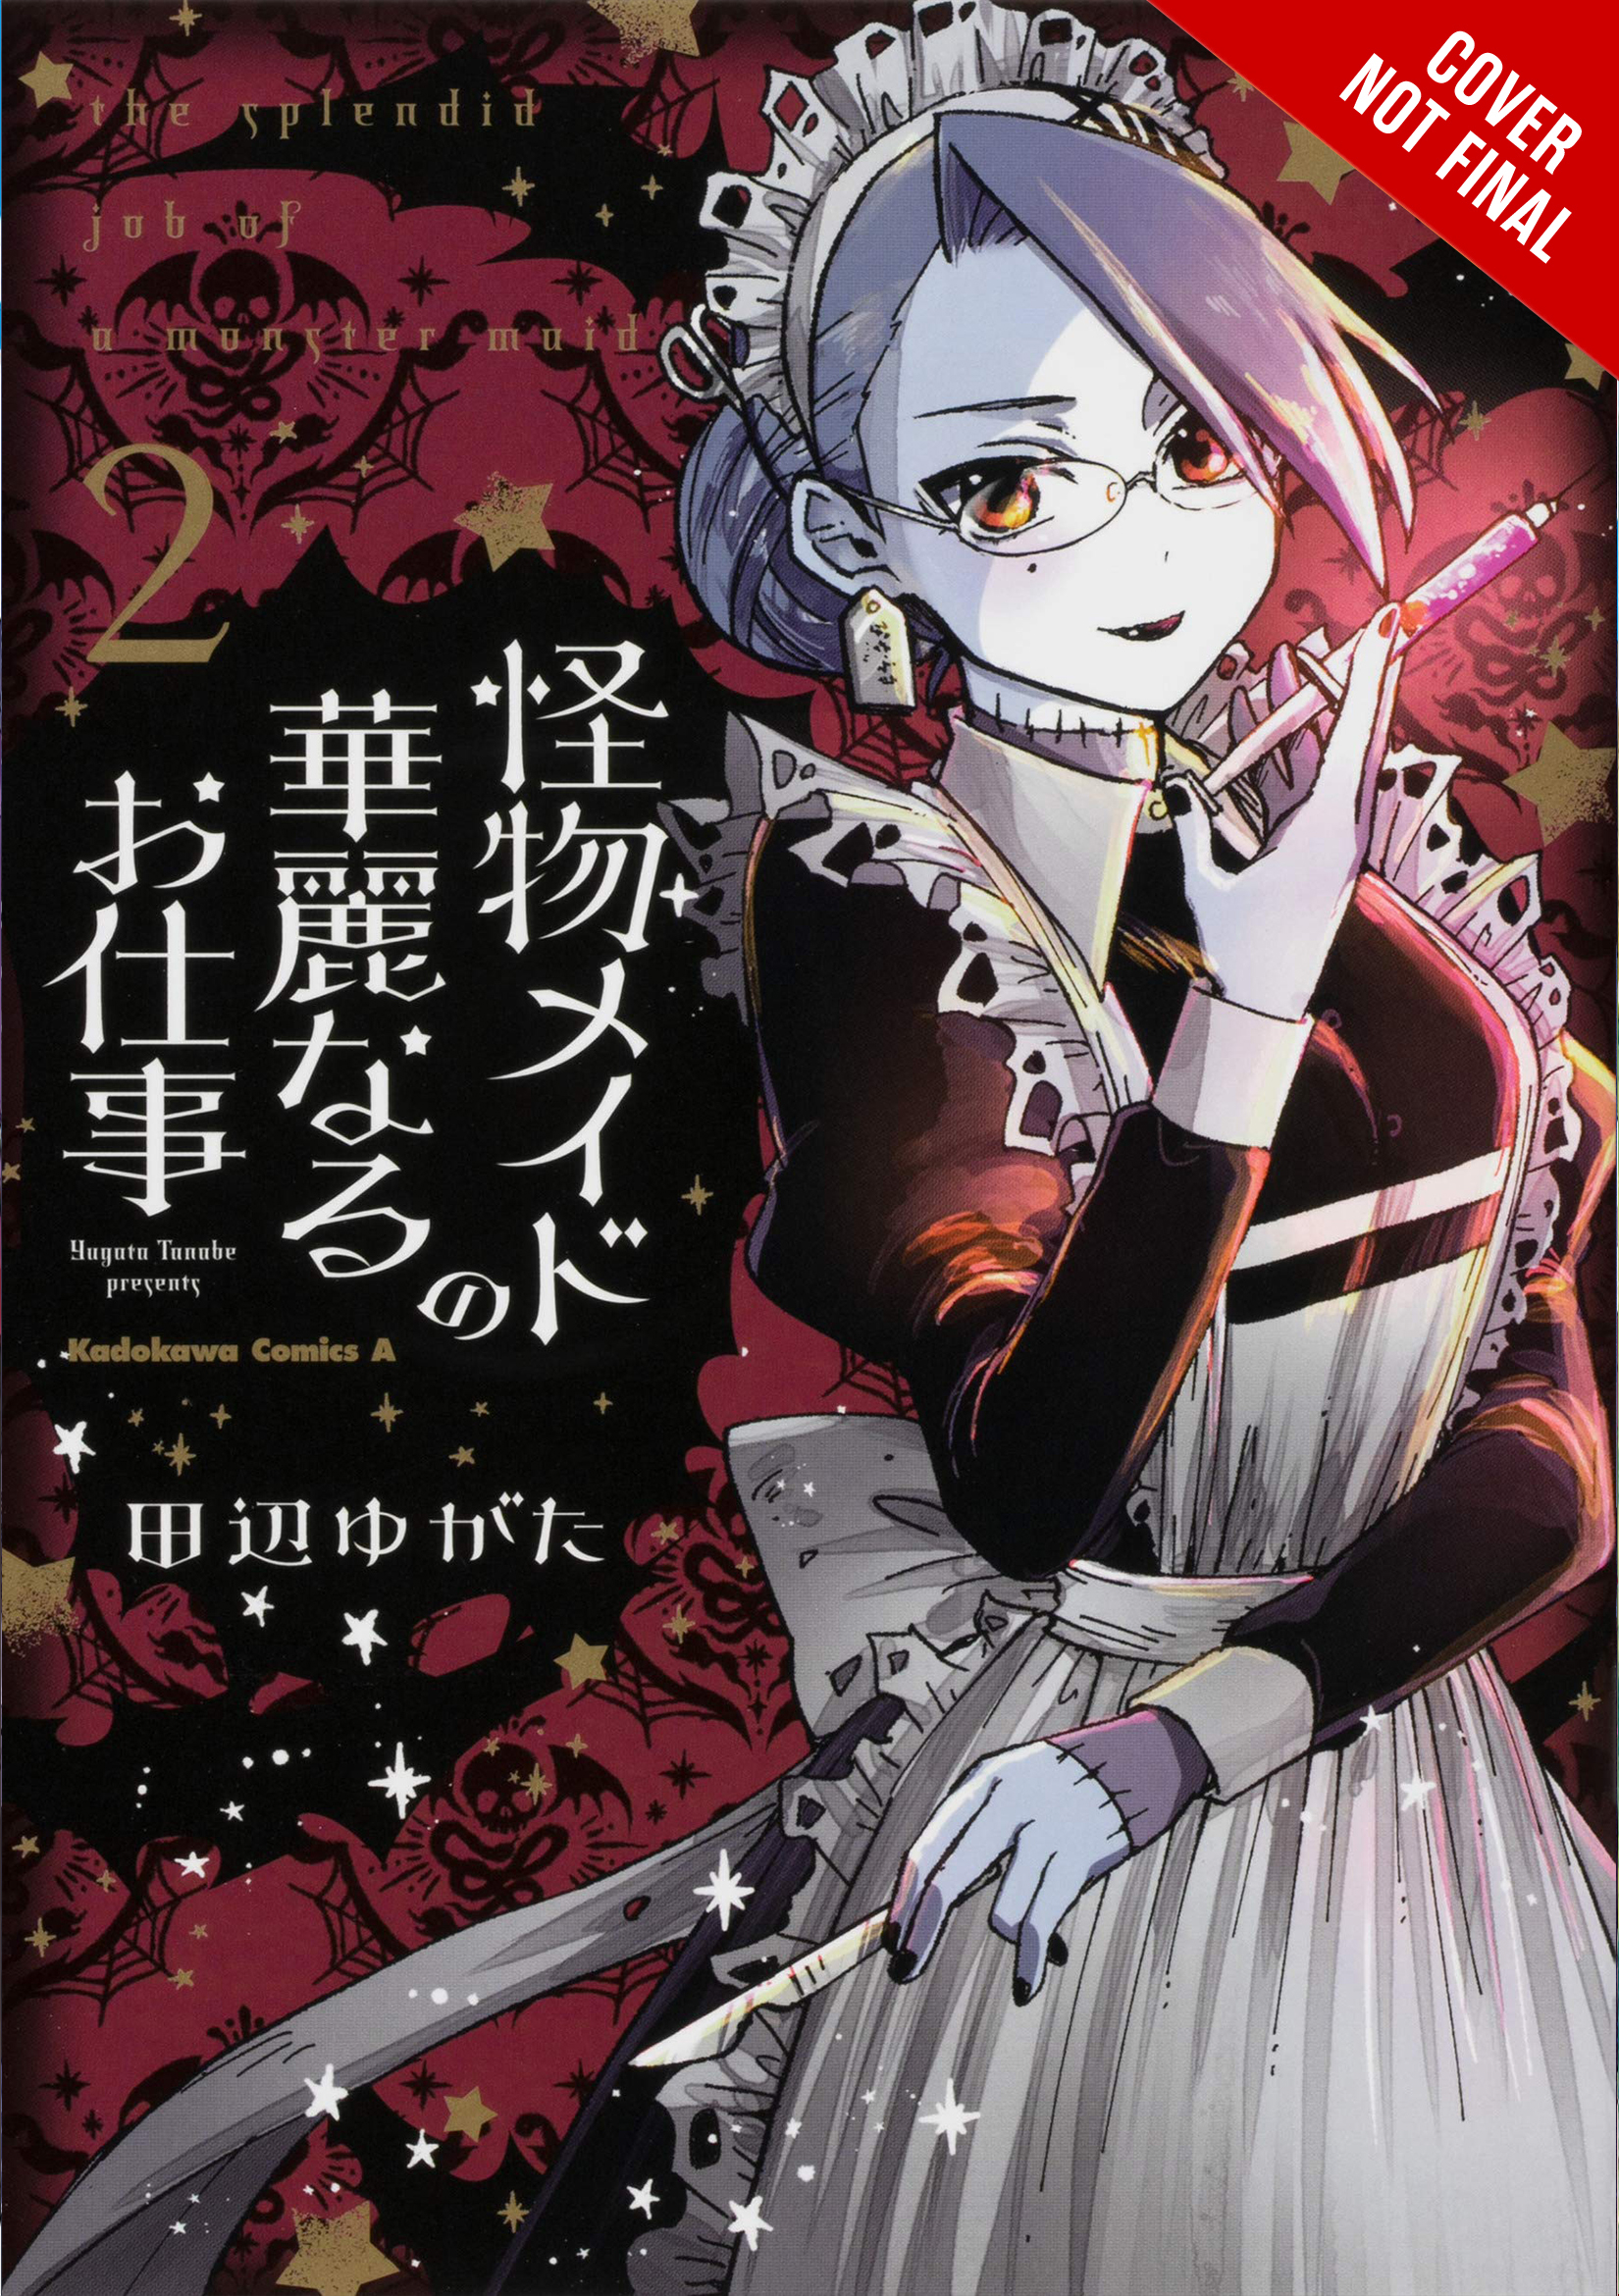 Splendid Work of Monster Maid Manga Volume 2 (Mature)